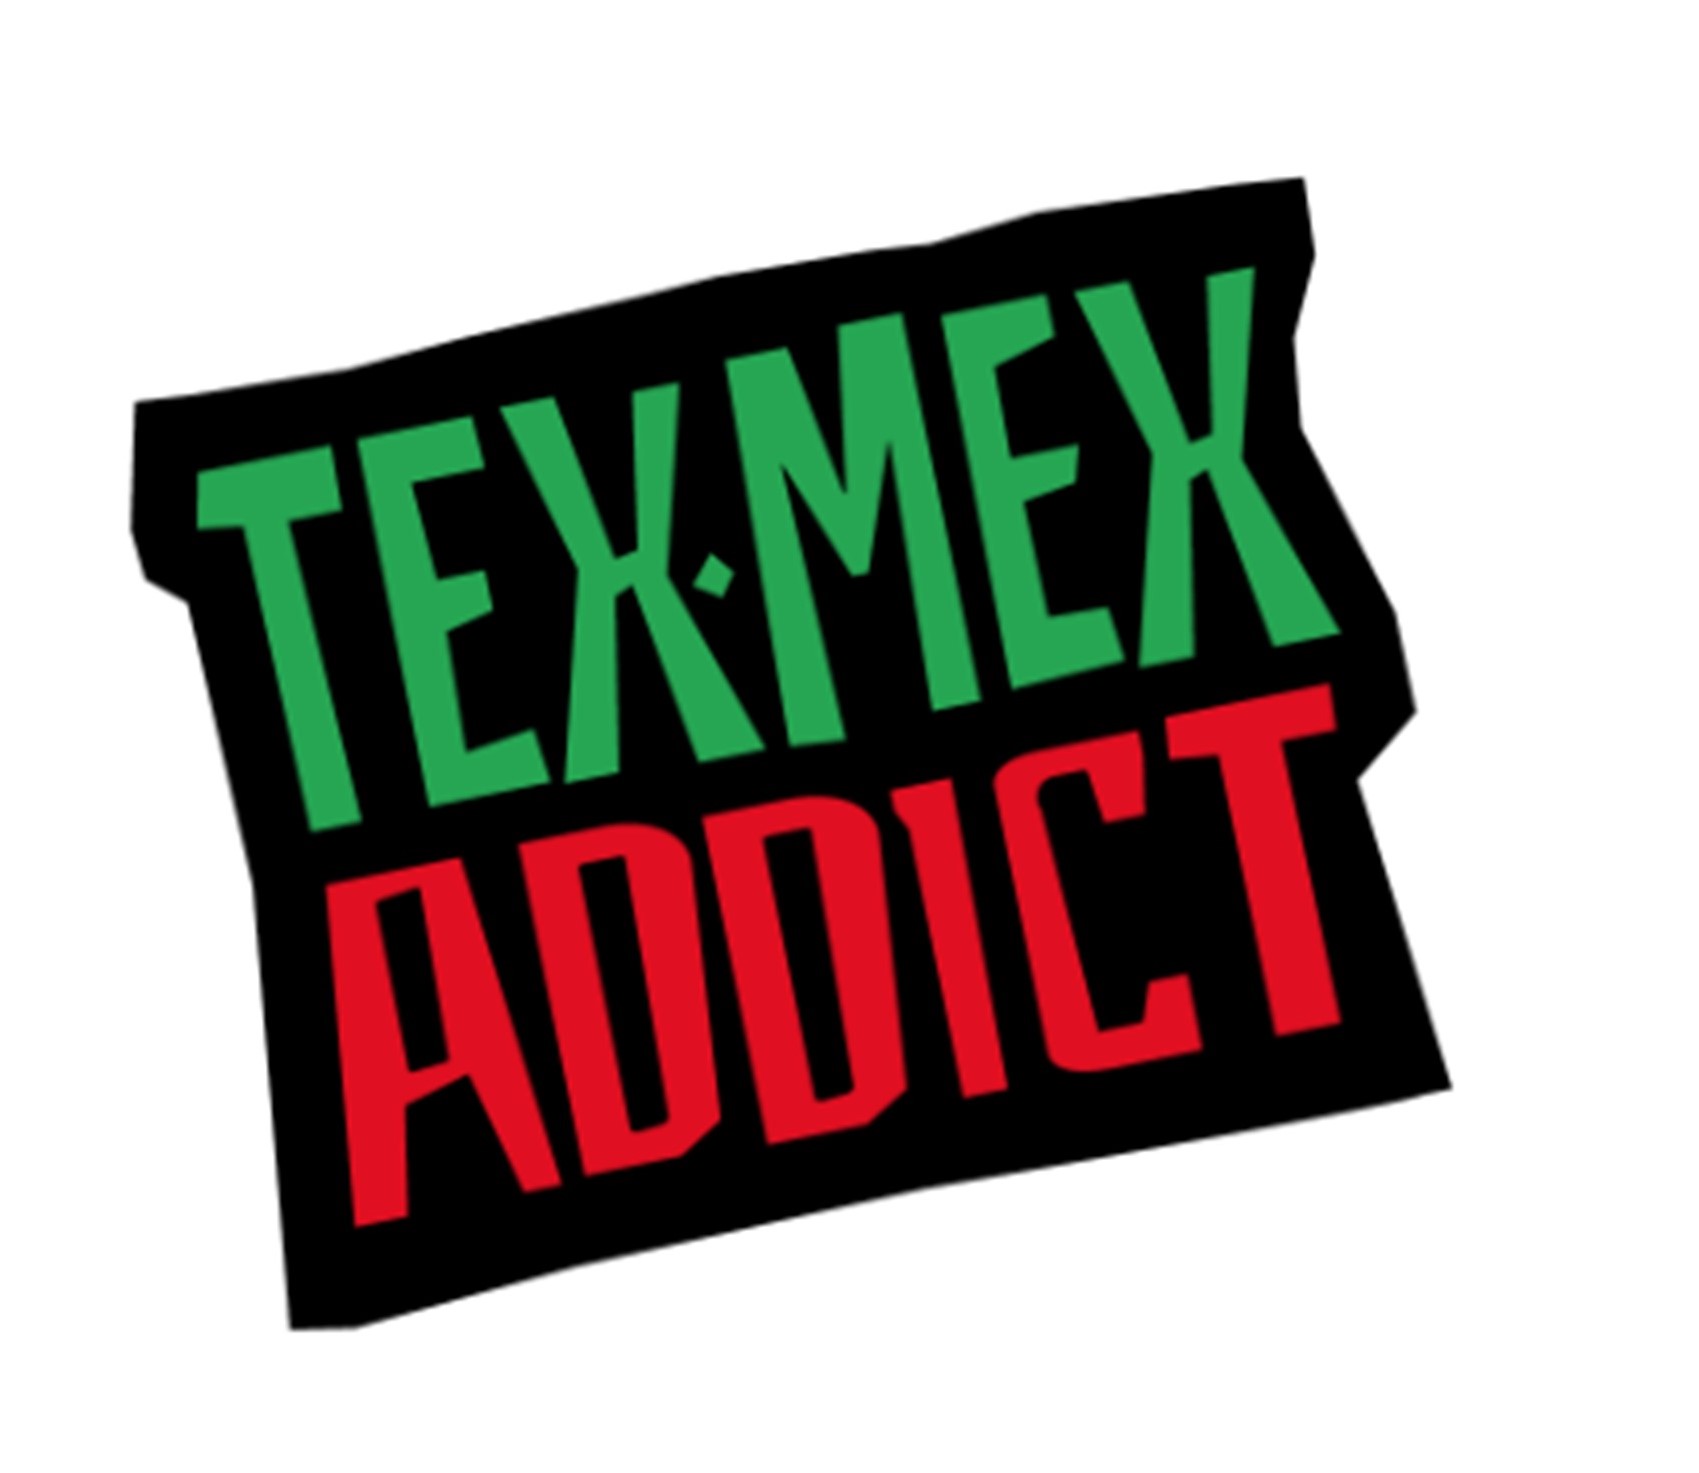 Tex-Mex Addict